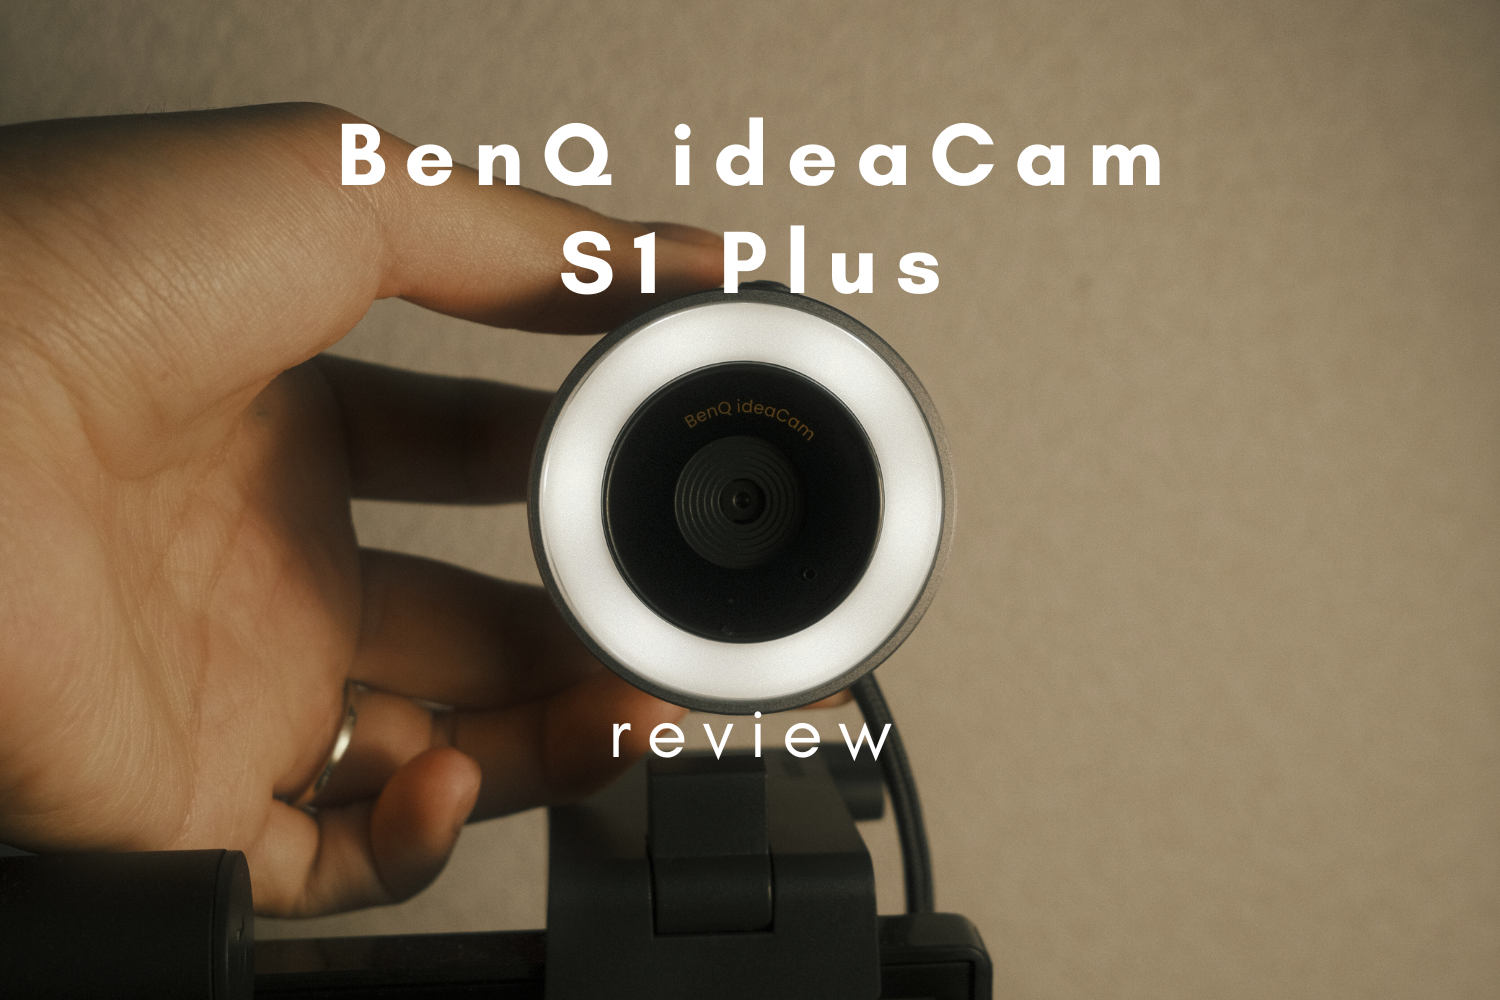 benq-ideacam-s1-plus-review